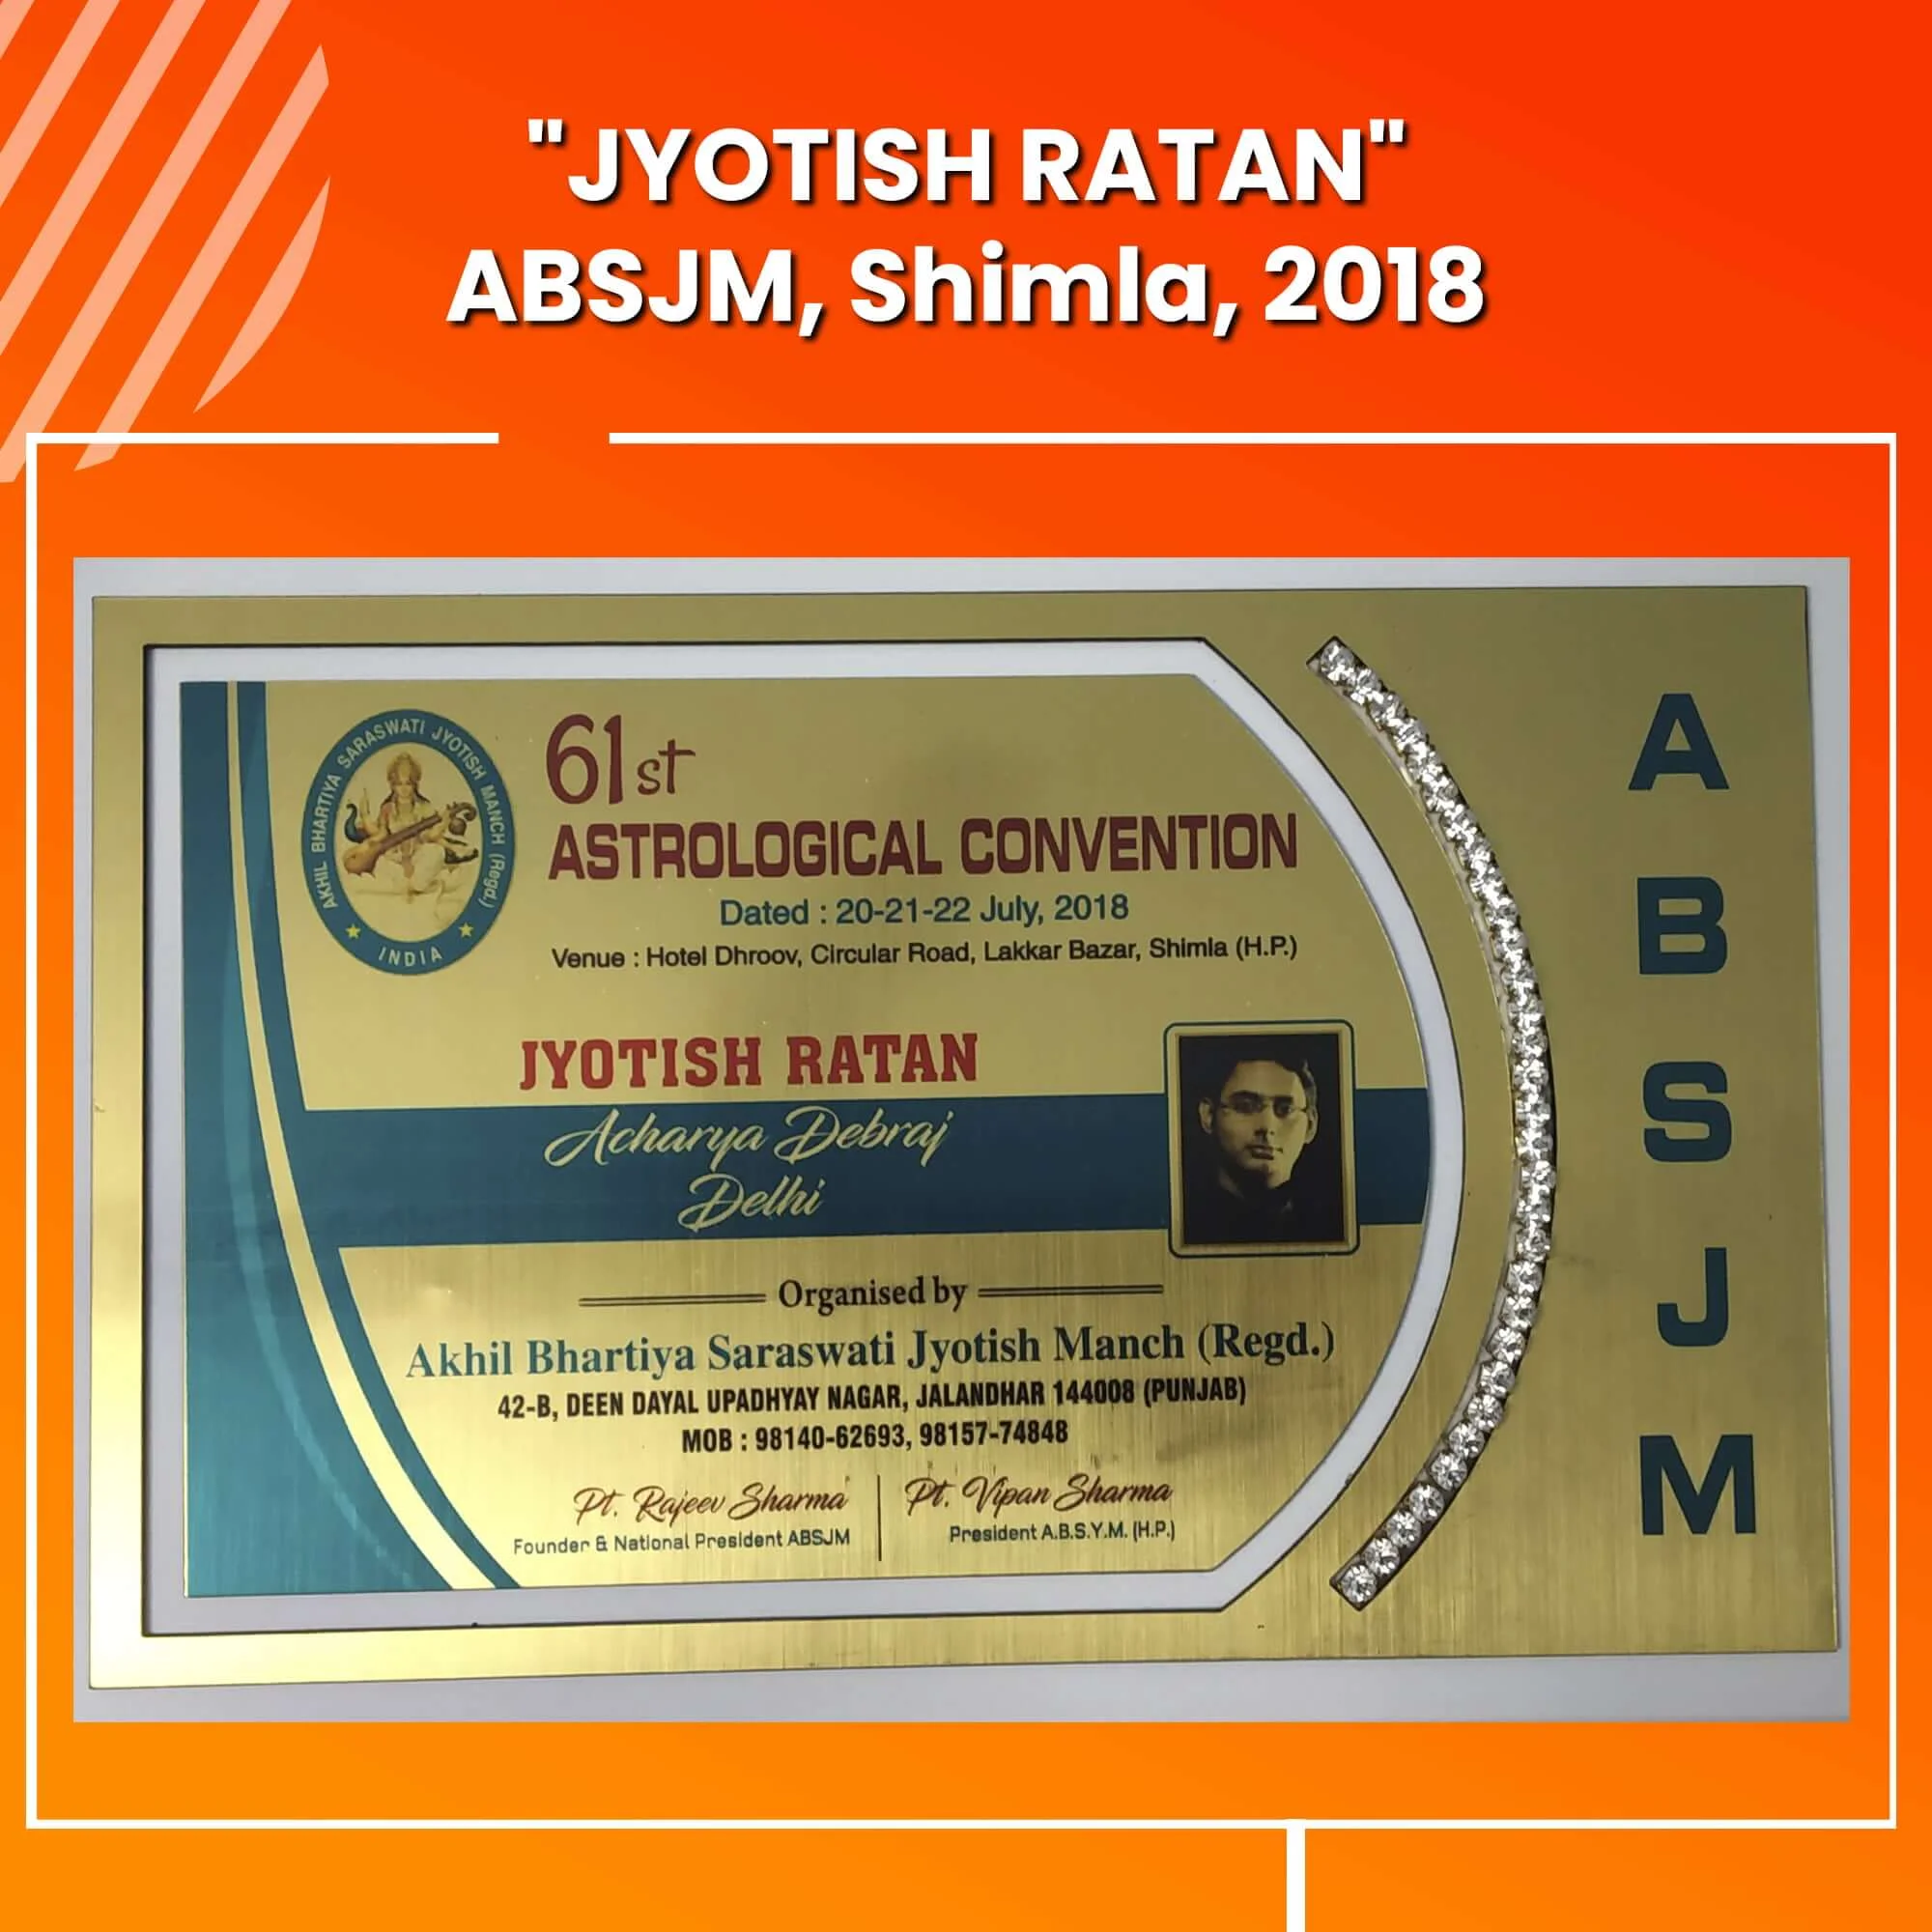 Jyotish Ratan Award received by best Astrologer Debraj Acharya practice in Kolkata, Mumbai, Delhi, Bangalore